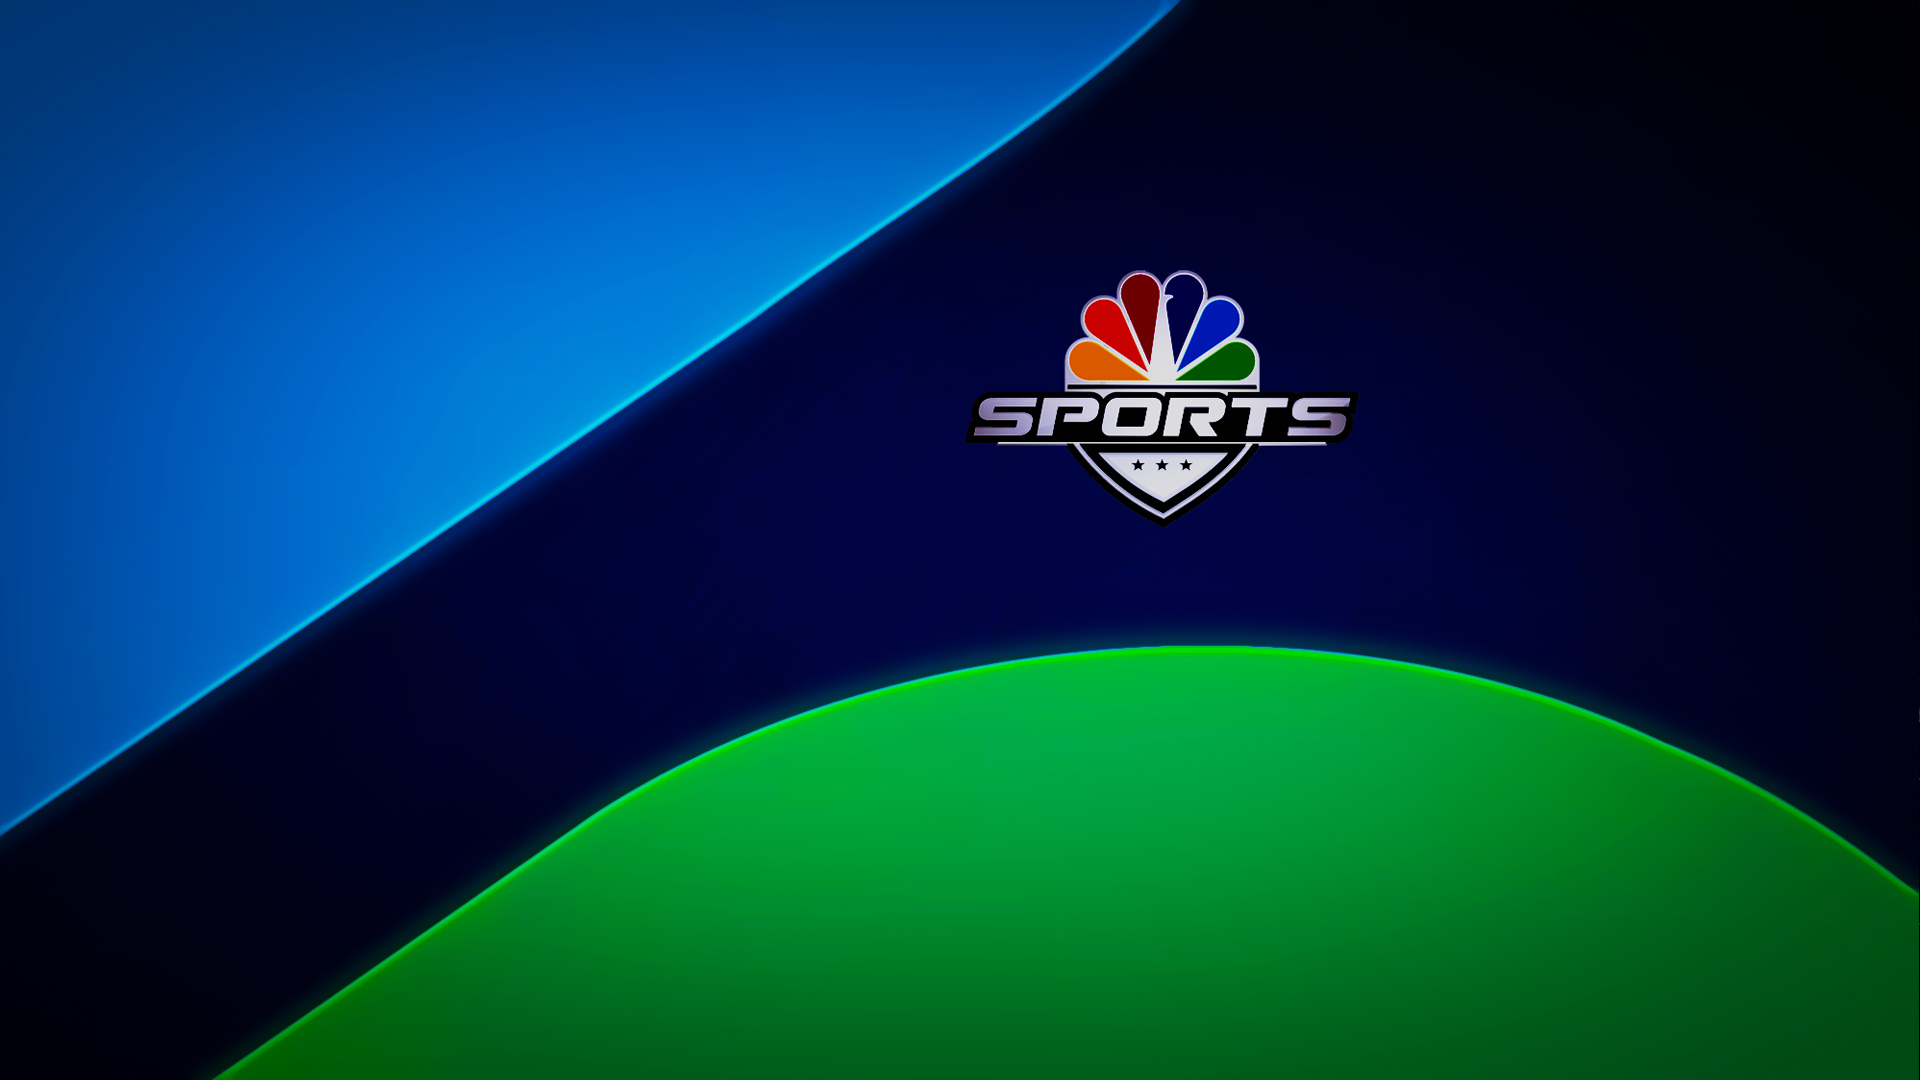 NBC_Sports-ALL_HD-2.jpg